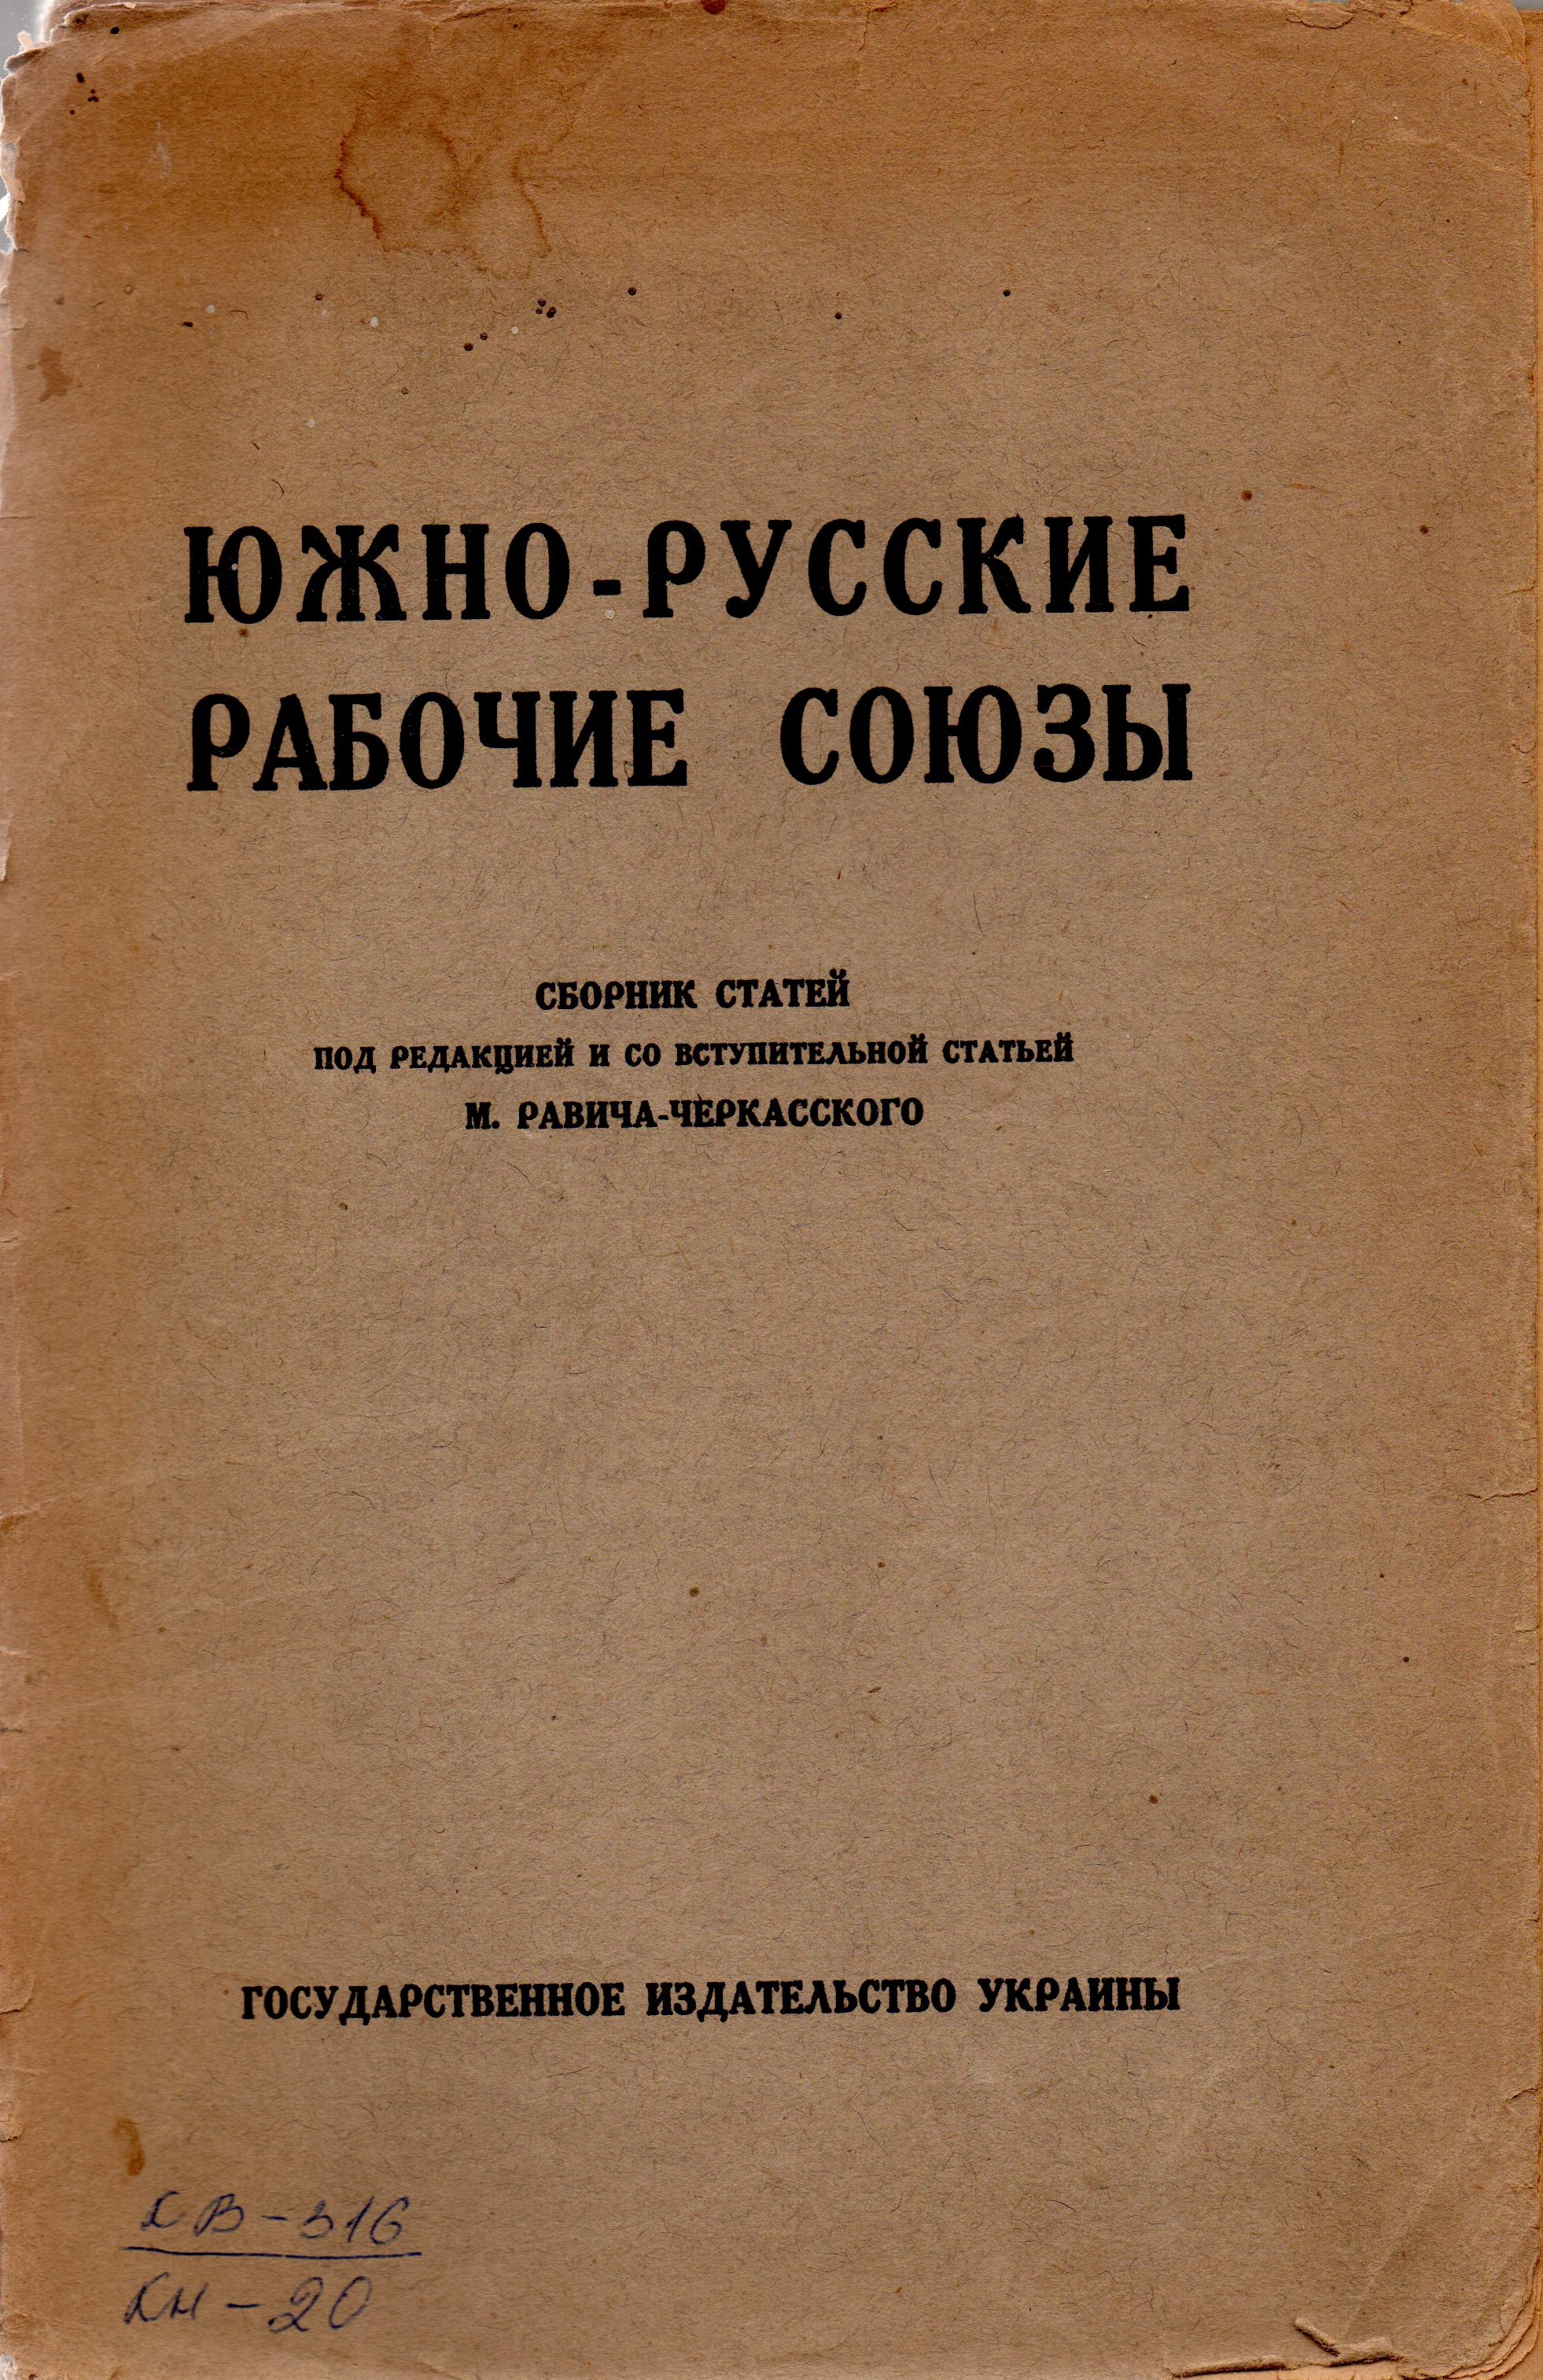 Книга "Южно-русские рабочие союзы"